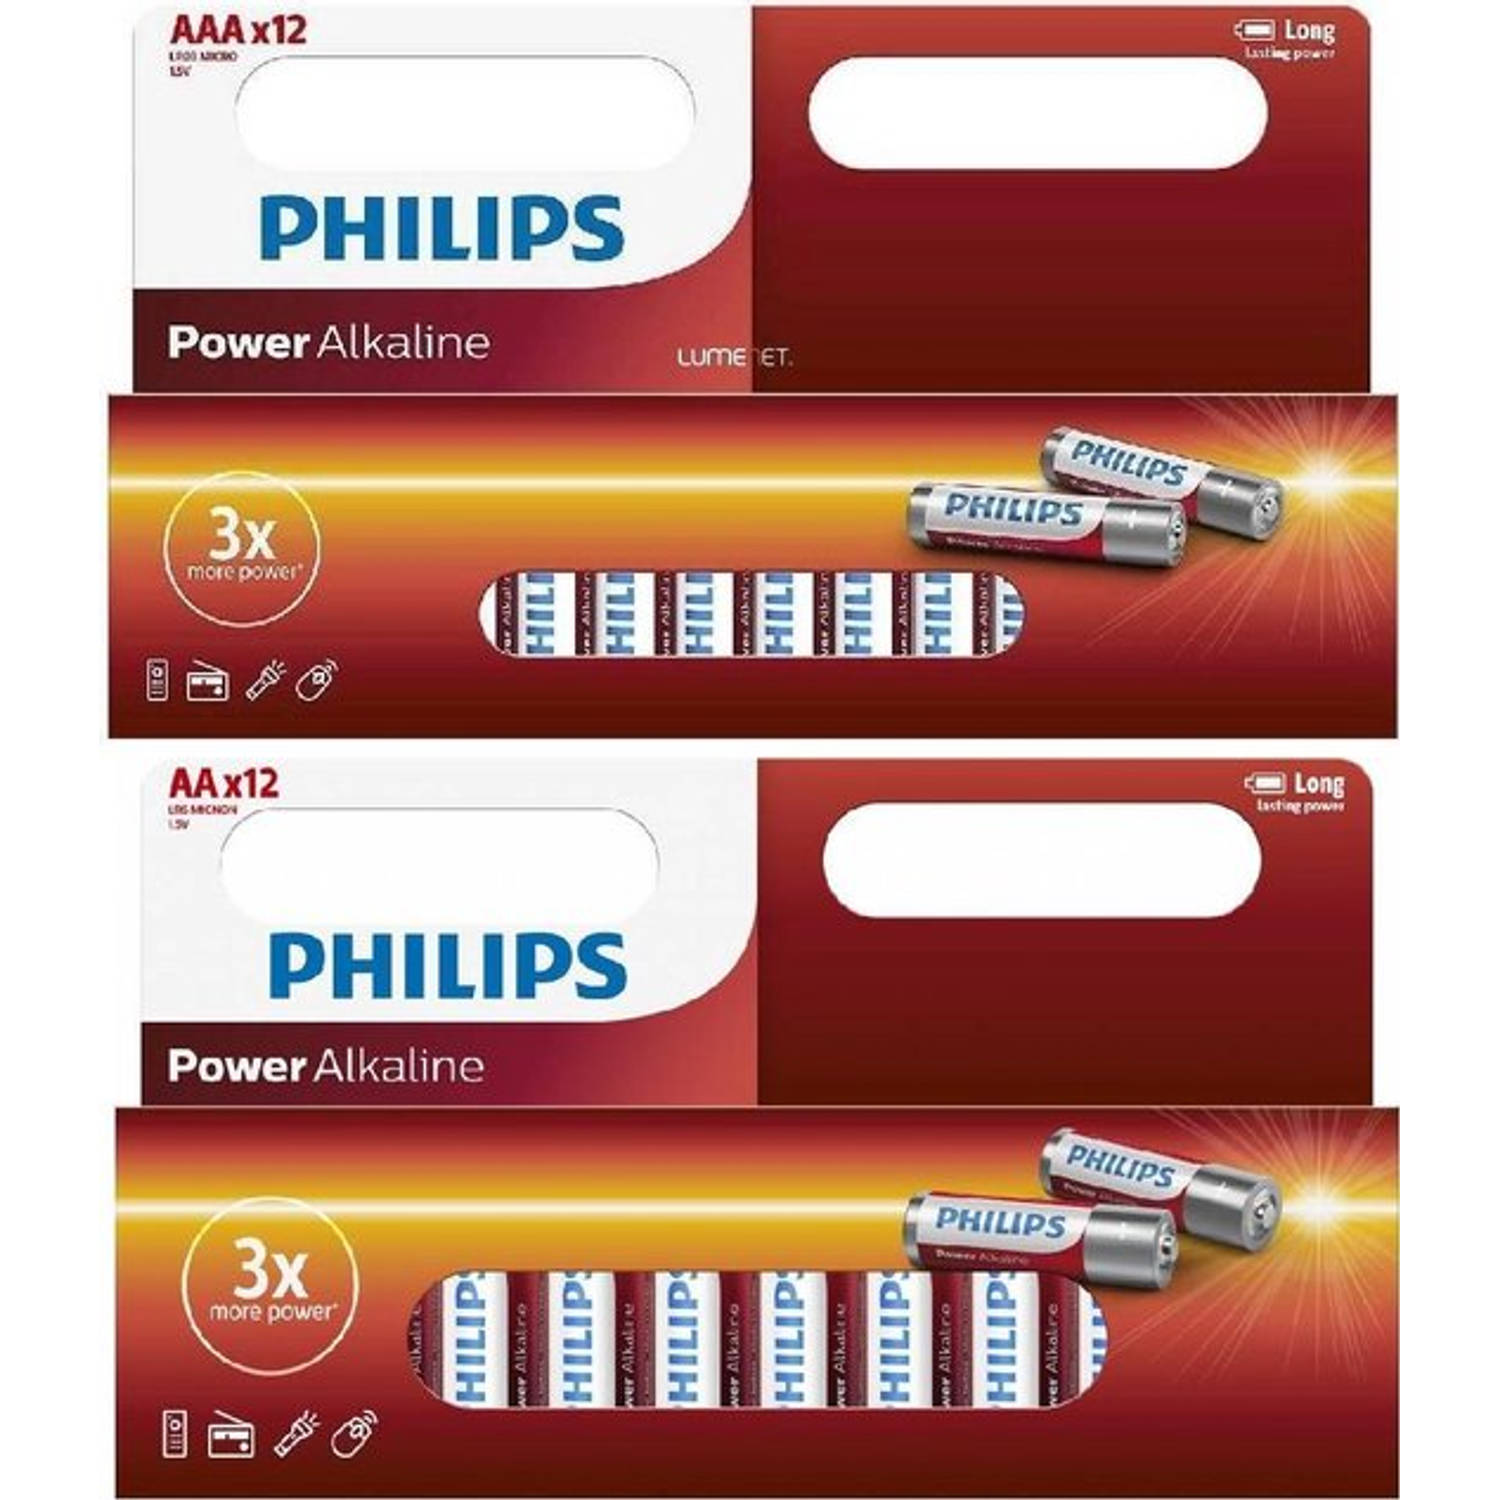 Combi Deal / Philips Power Alkaline 12x AA + 12x AAA